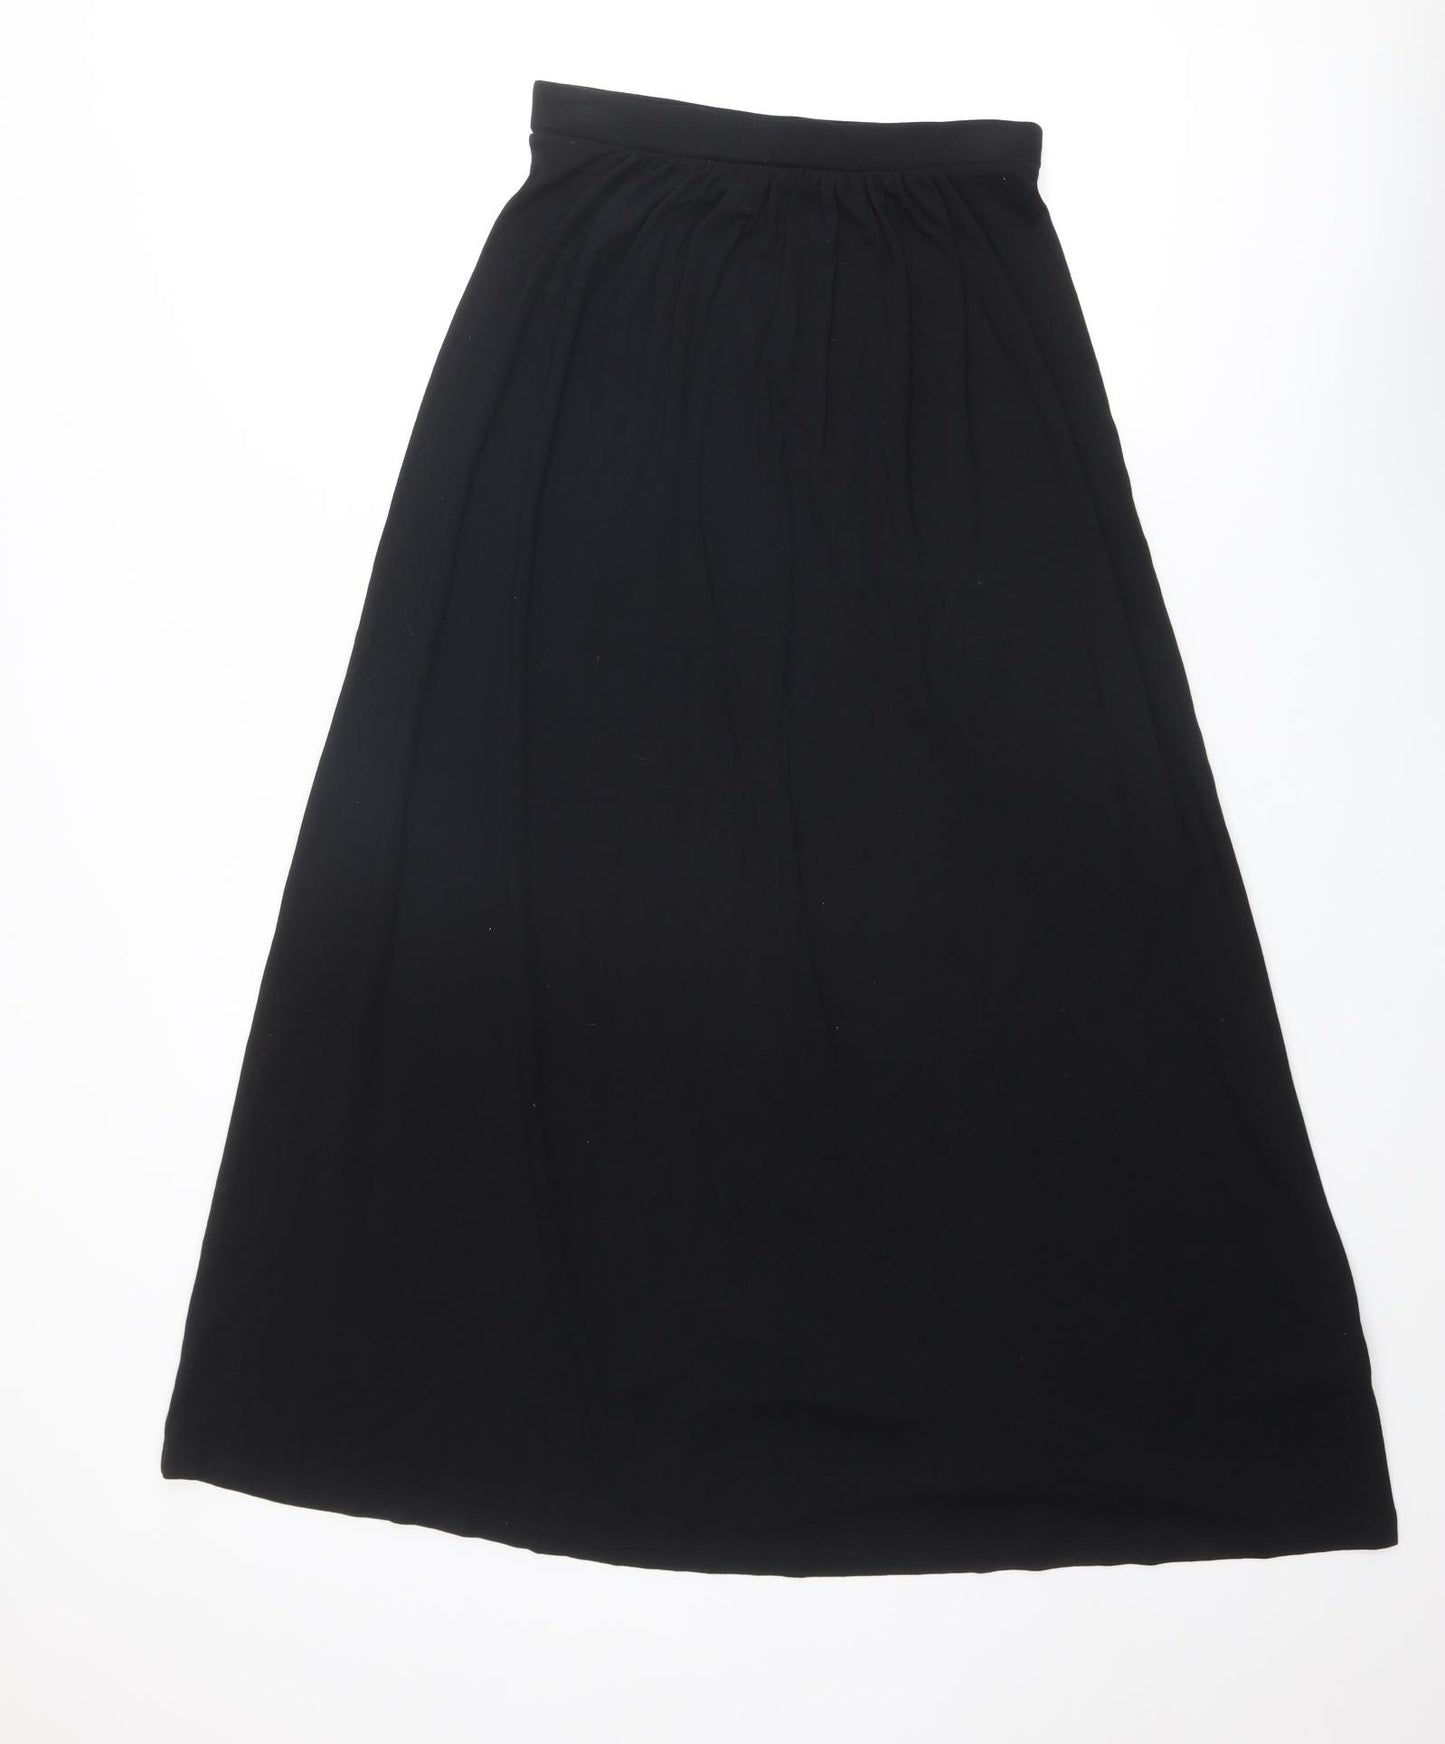 Boden Womens Black Viscose Maxi Skirt Size 6